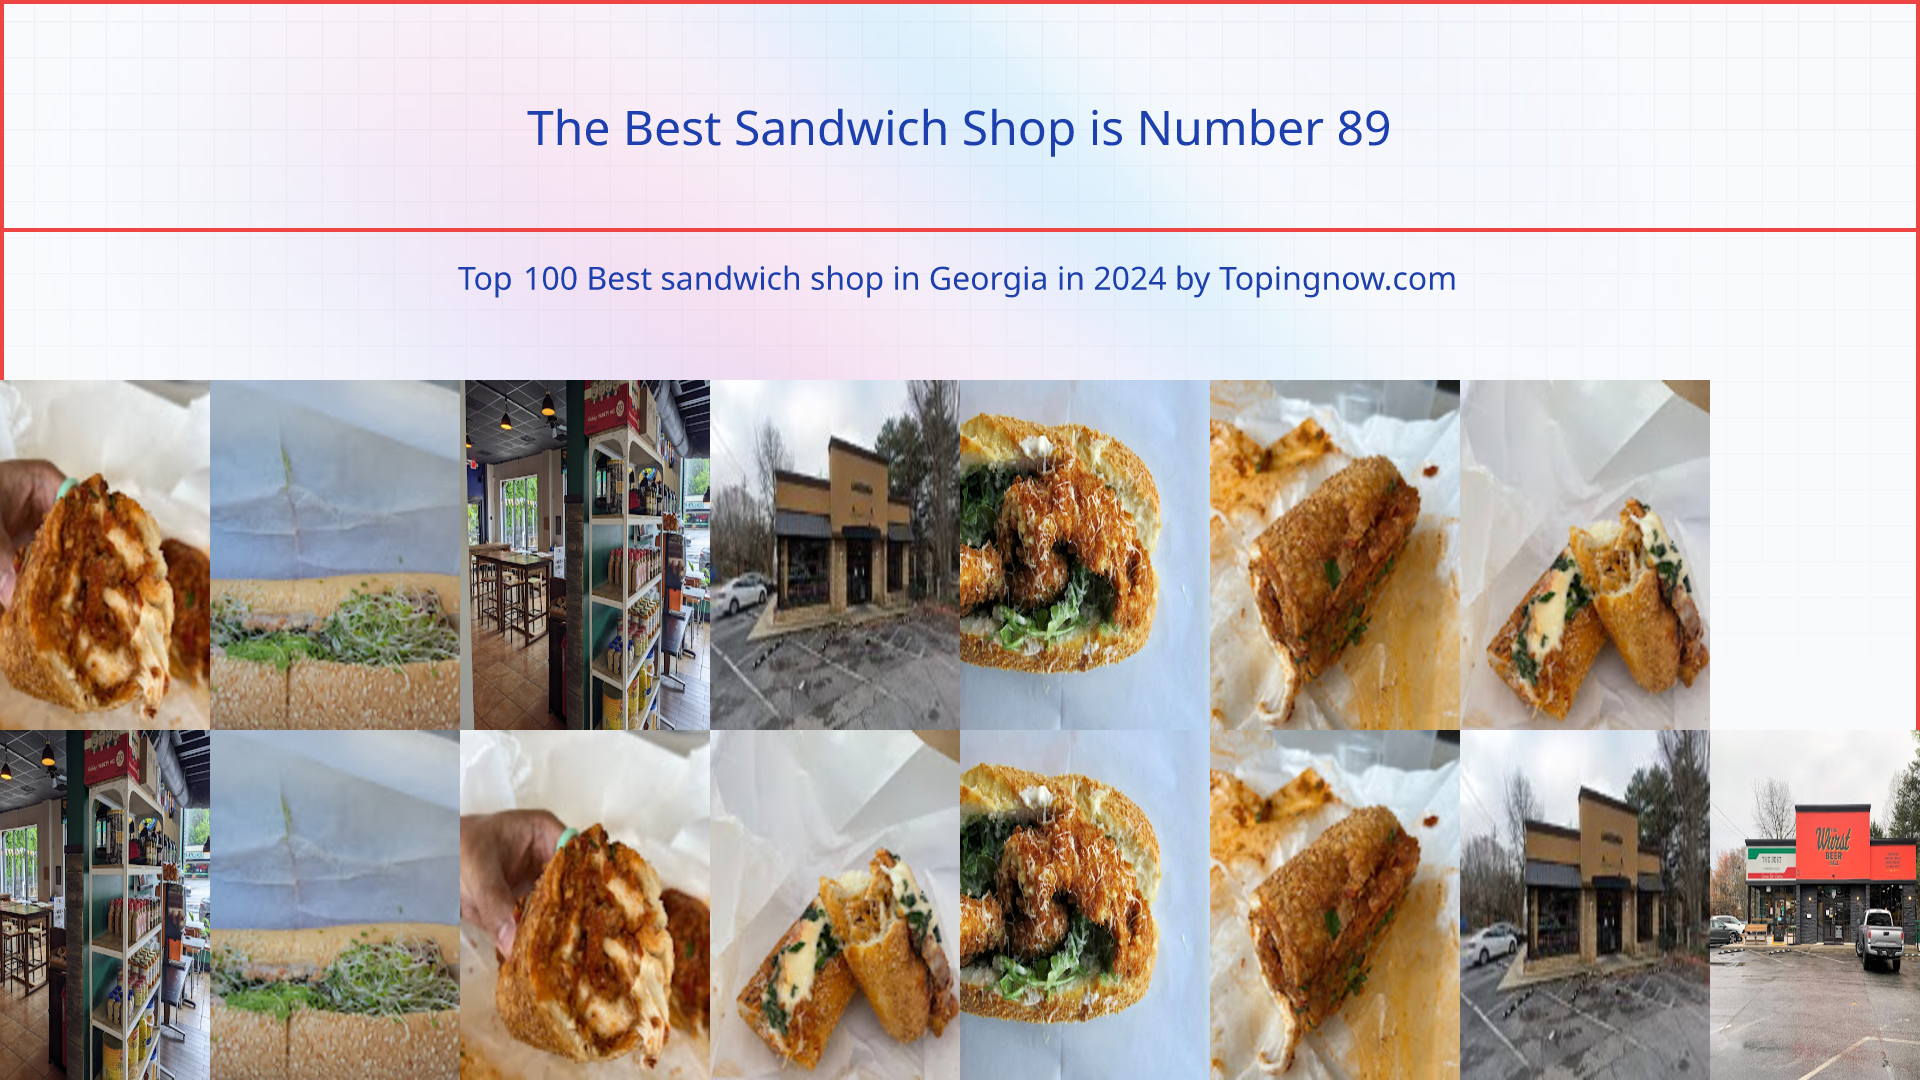 The Best Sandwich Shop: Top 100 Best sandwich shop in Georgia in 2024